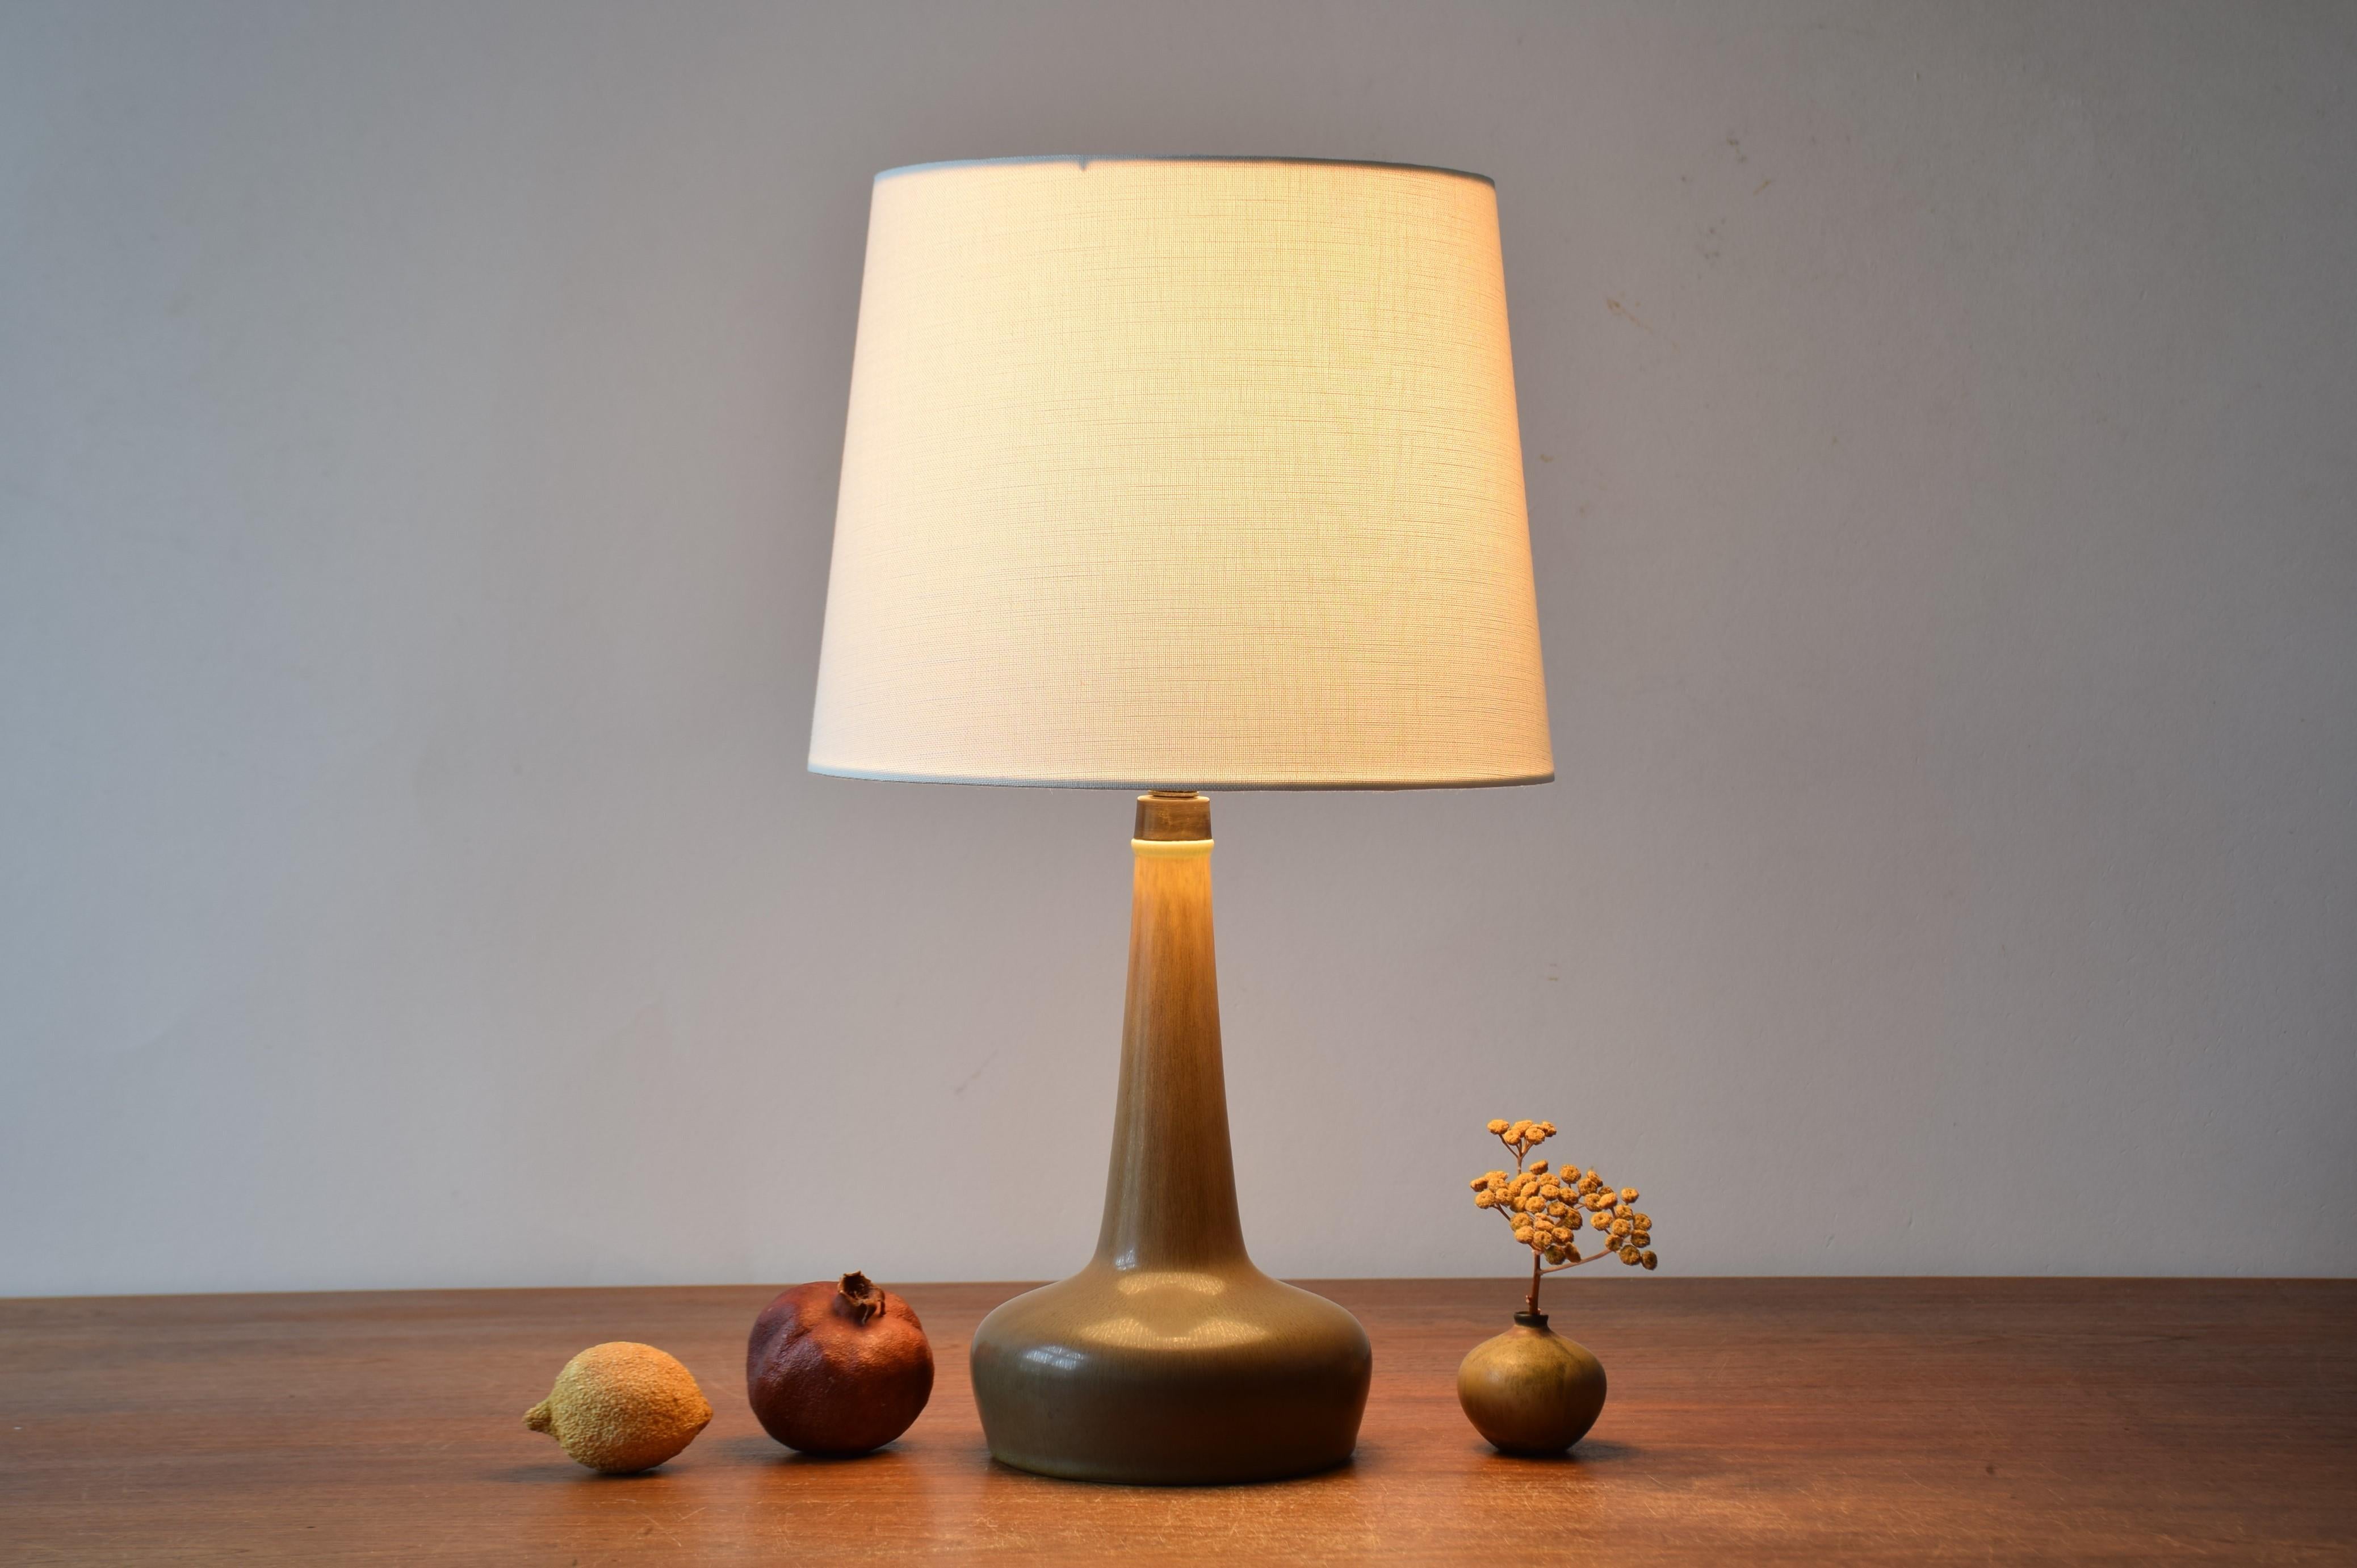 Lampe de table Palshus / Le Klint avec glaçure brun lièvre et plateau en laiton patiné.
Cette lampe a été conçue par Esben Klint et fabriquée au studio de céramique danois Palshus pour le fabricant danois de lampes Le Klint. Fabriqué dans les